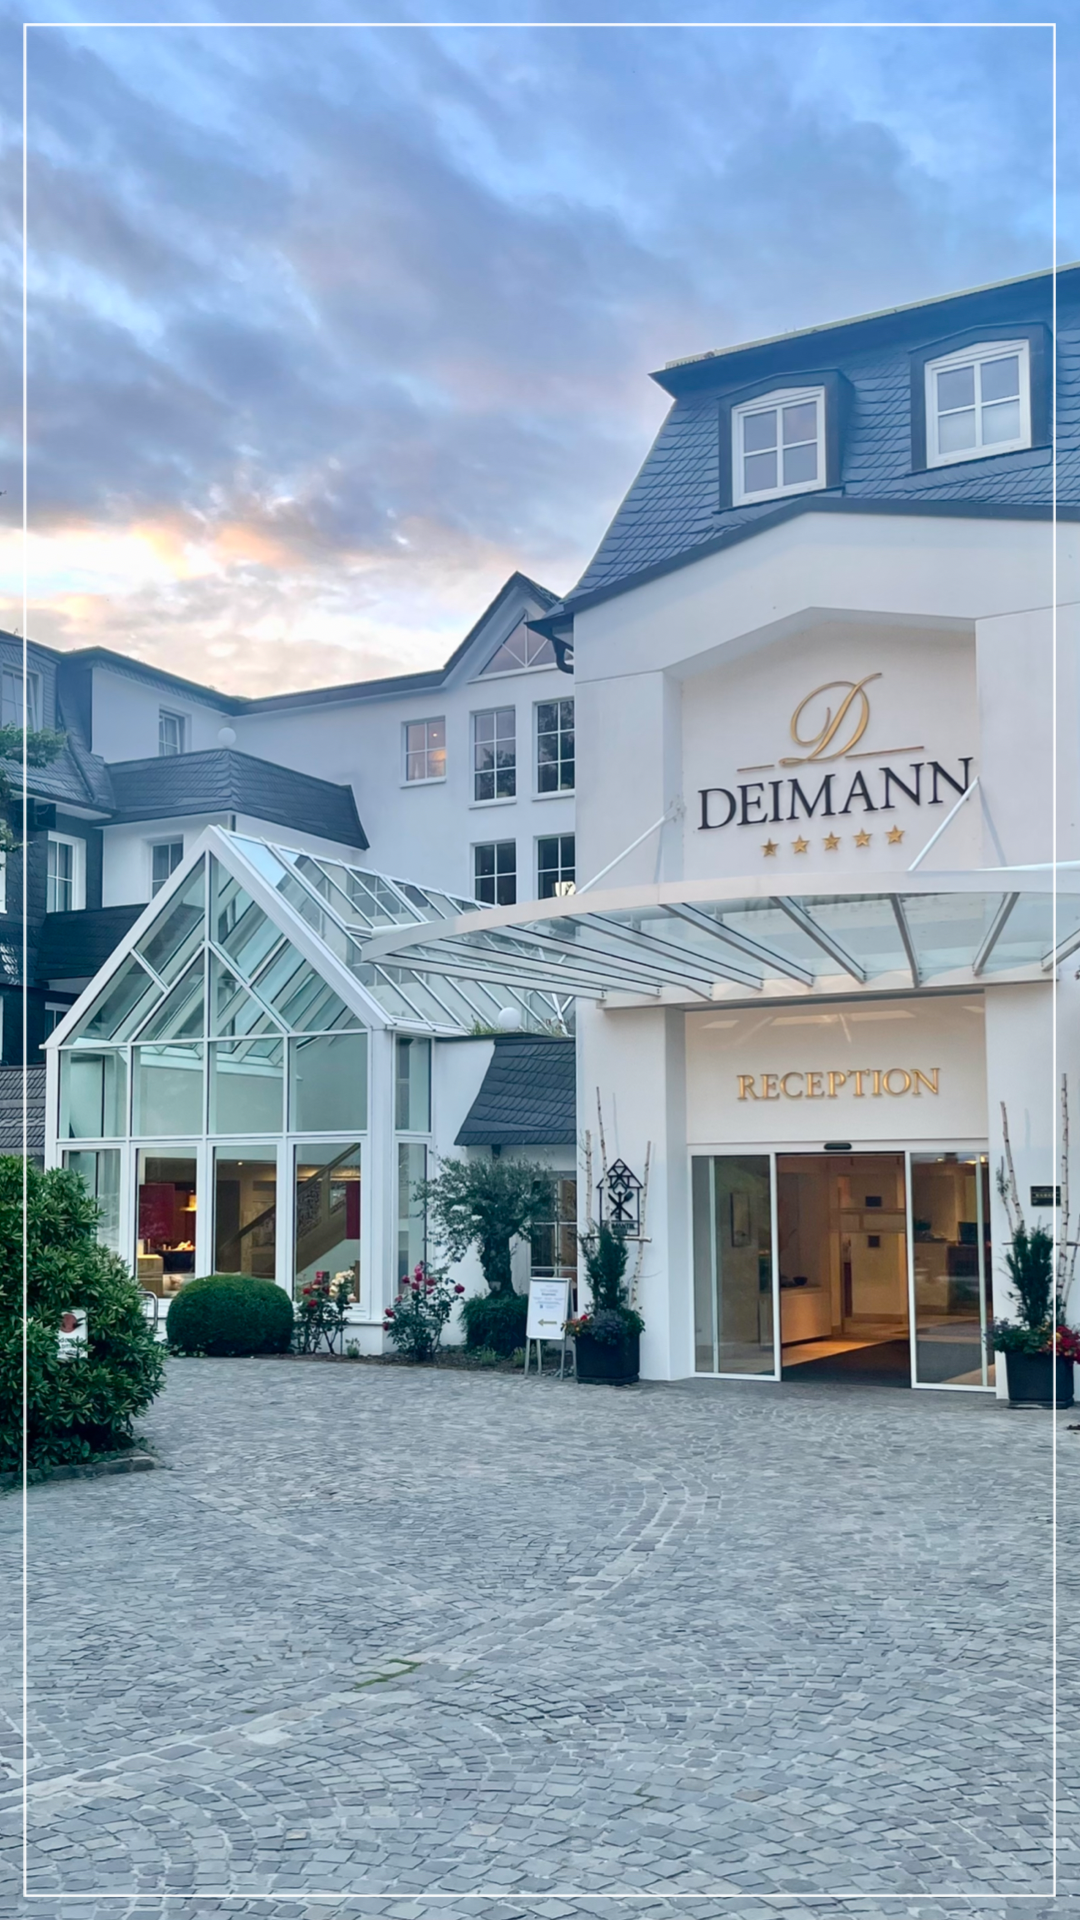 Blick auf den Eingang des Hotel Deimanns - dein top Arbeitgeber.